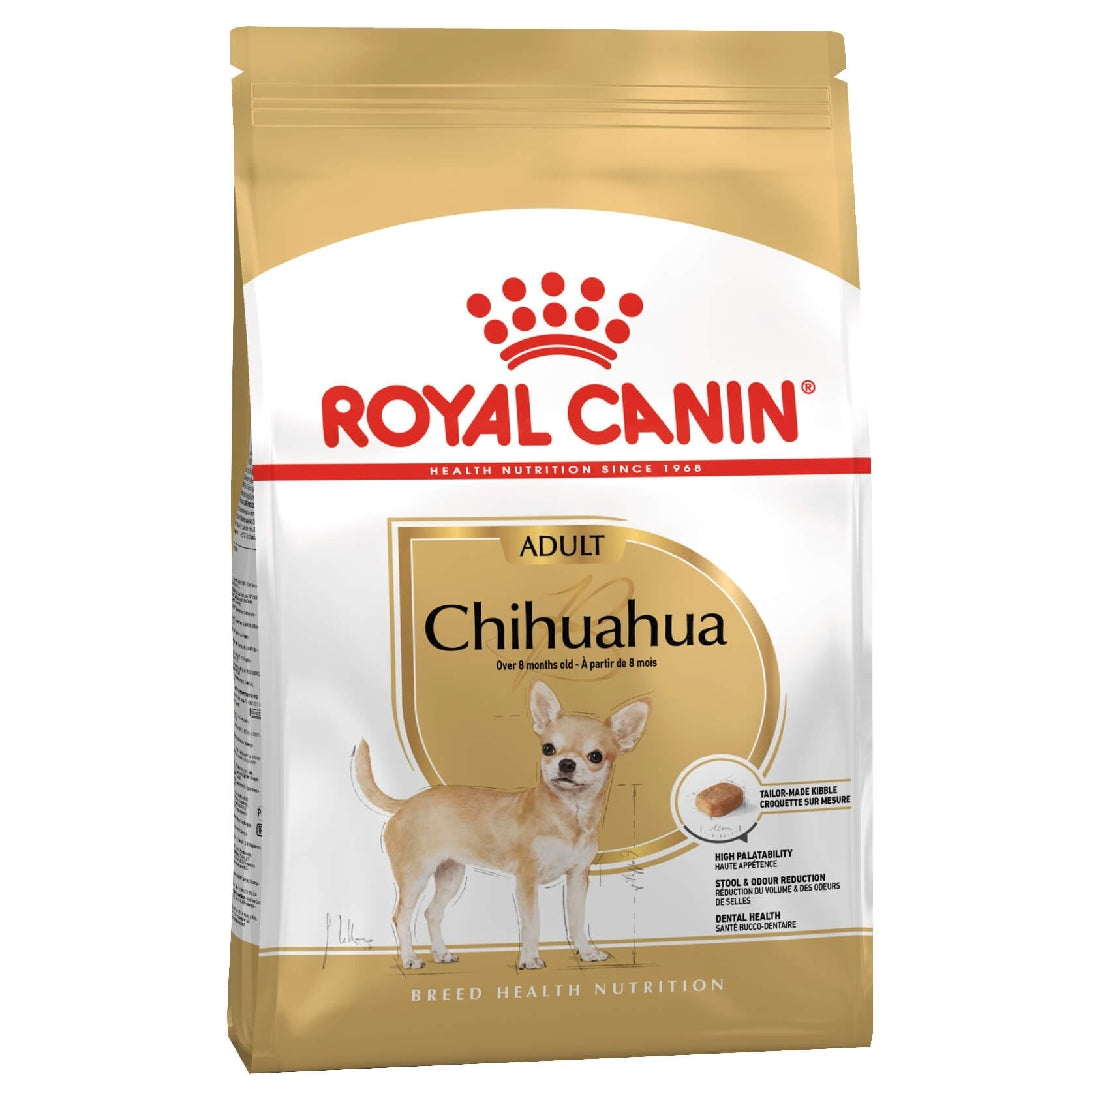 Royal Canin Chihuahua 1.5kg